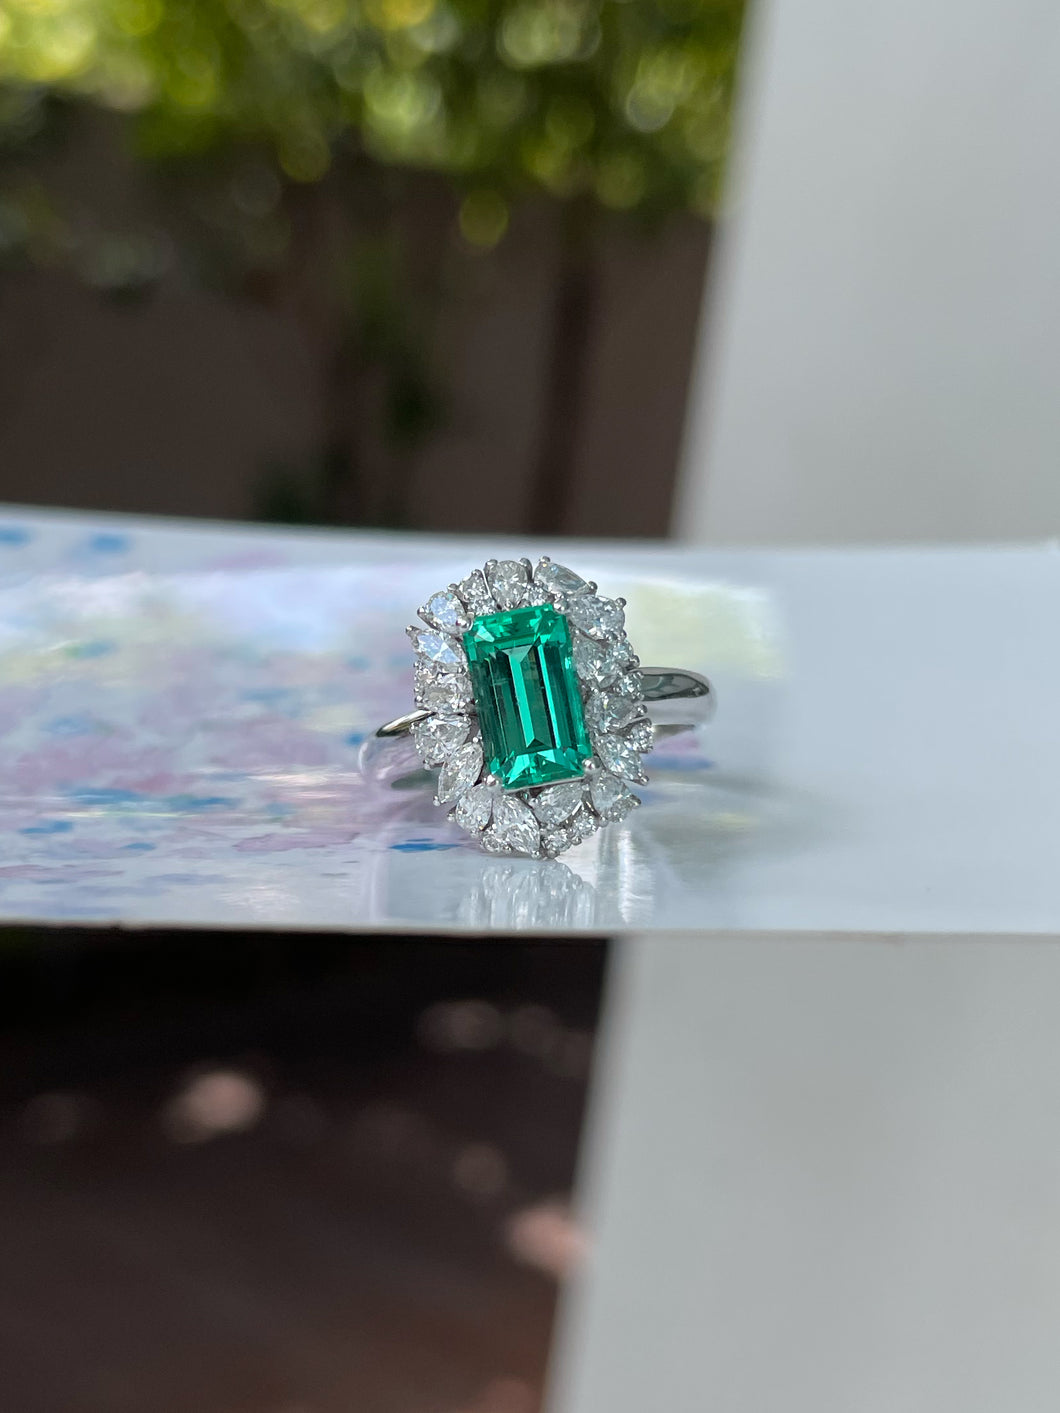 Un-oiled Emerald Ring - 1.17CT (NJR033)